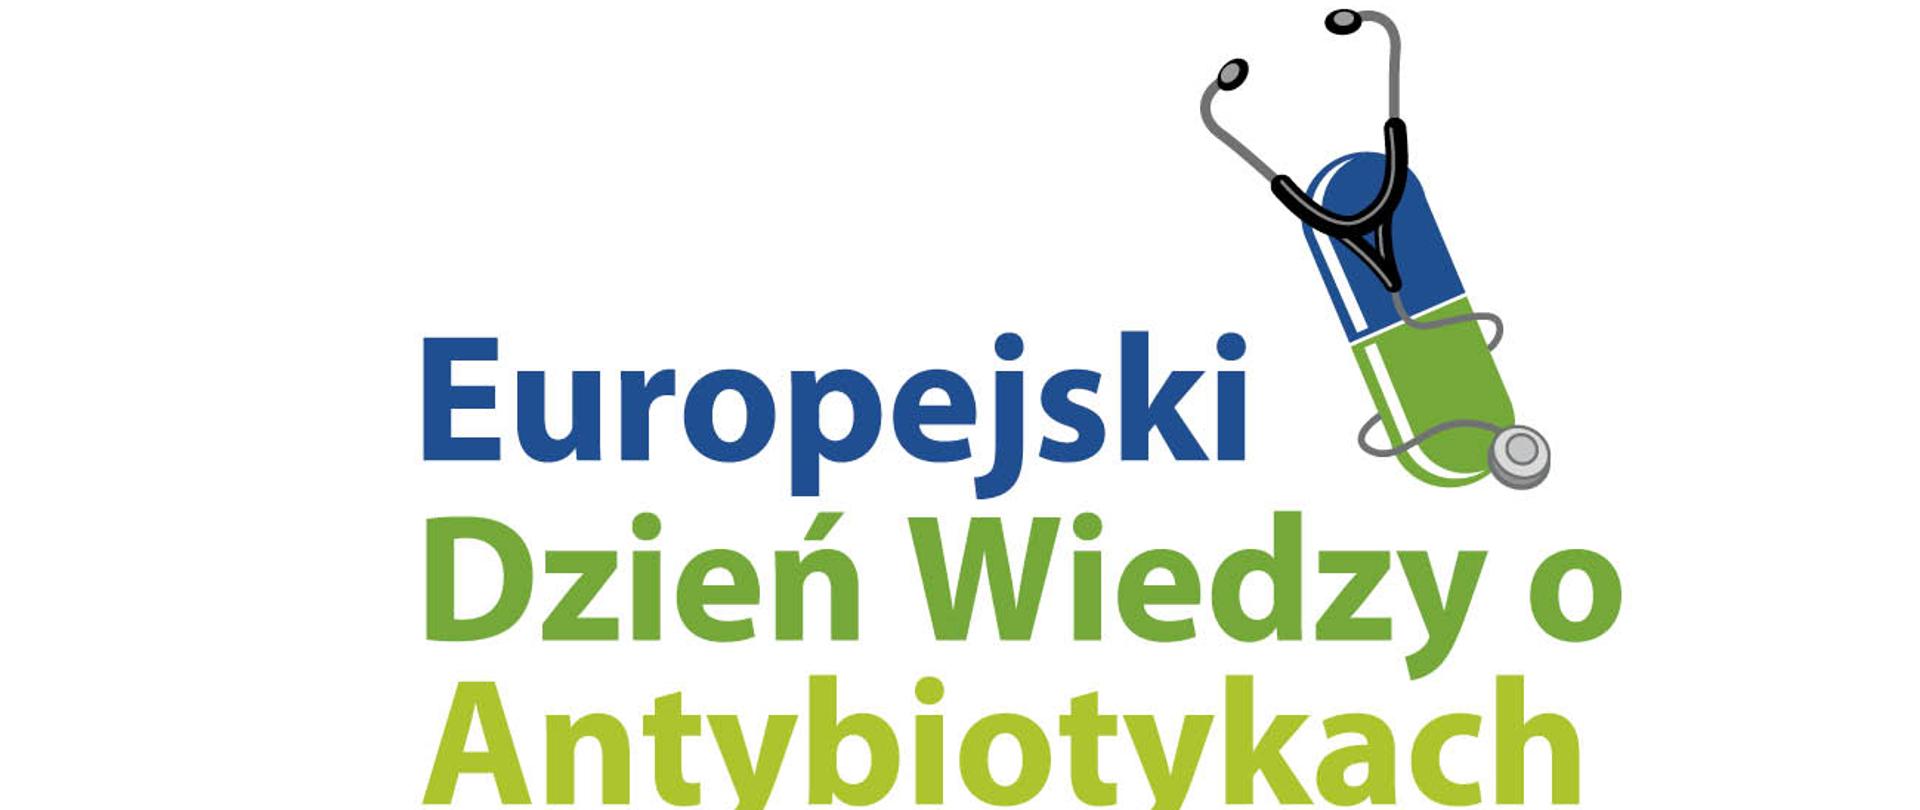 europejski dzien wiedzy o antybiotykach